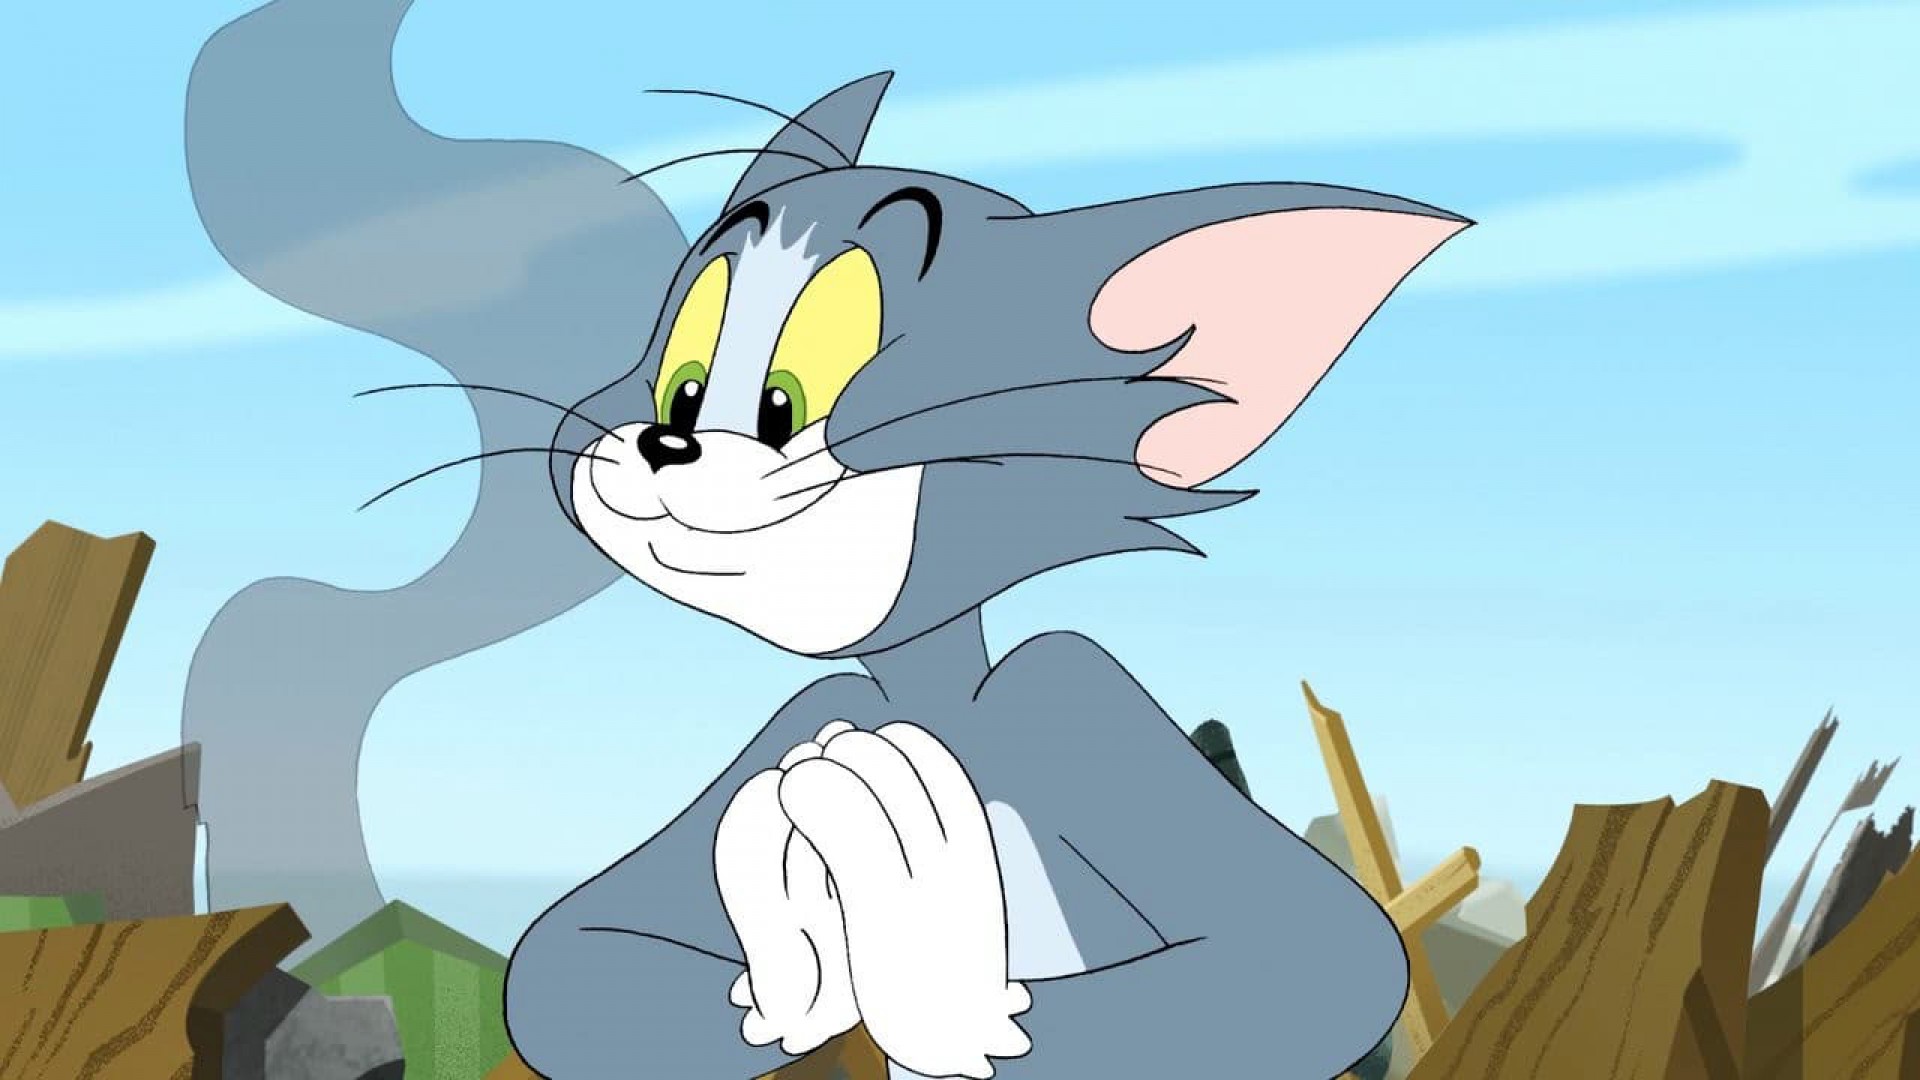 Jerry том и джерри. Tom and Jerry. Том и Джерри Tom and Jerry. Том и Джерри 2005. Том и Джерри 2001.